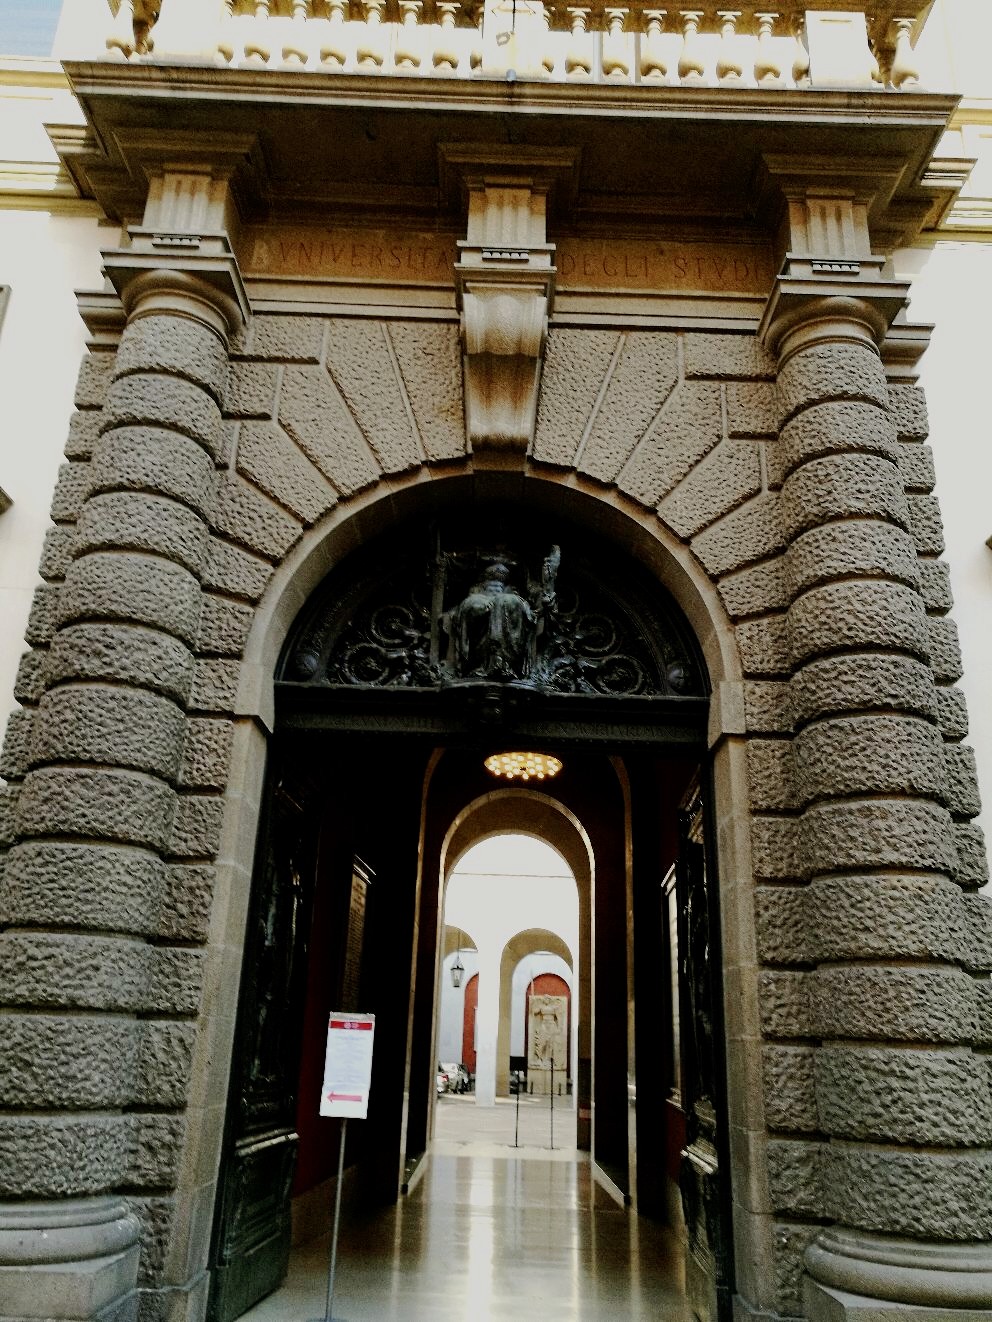 帕多瓦大学是欧洲最古老顶级大学之一，初到此地第一个要膜拜当然是它了。国外大学大多是没有围墙，帕多瓦大